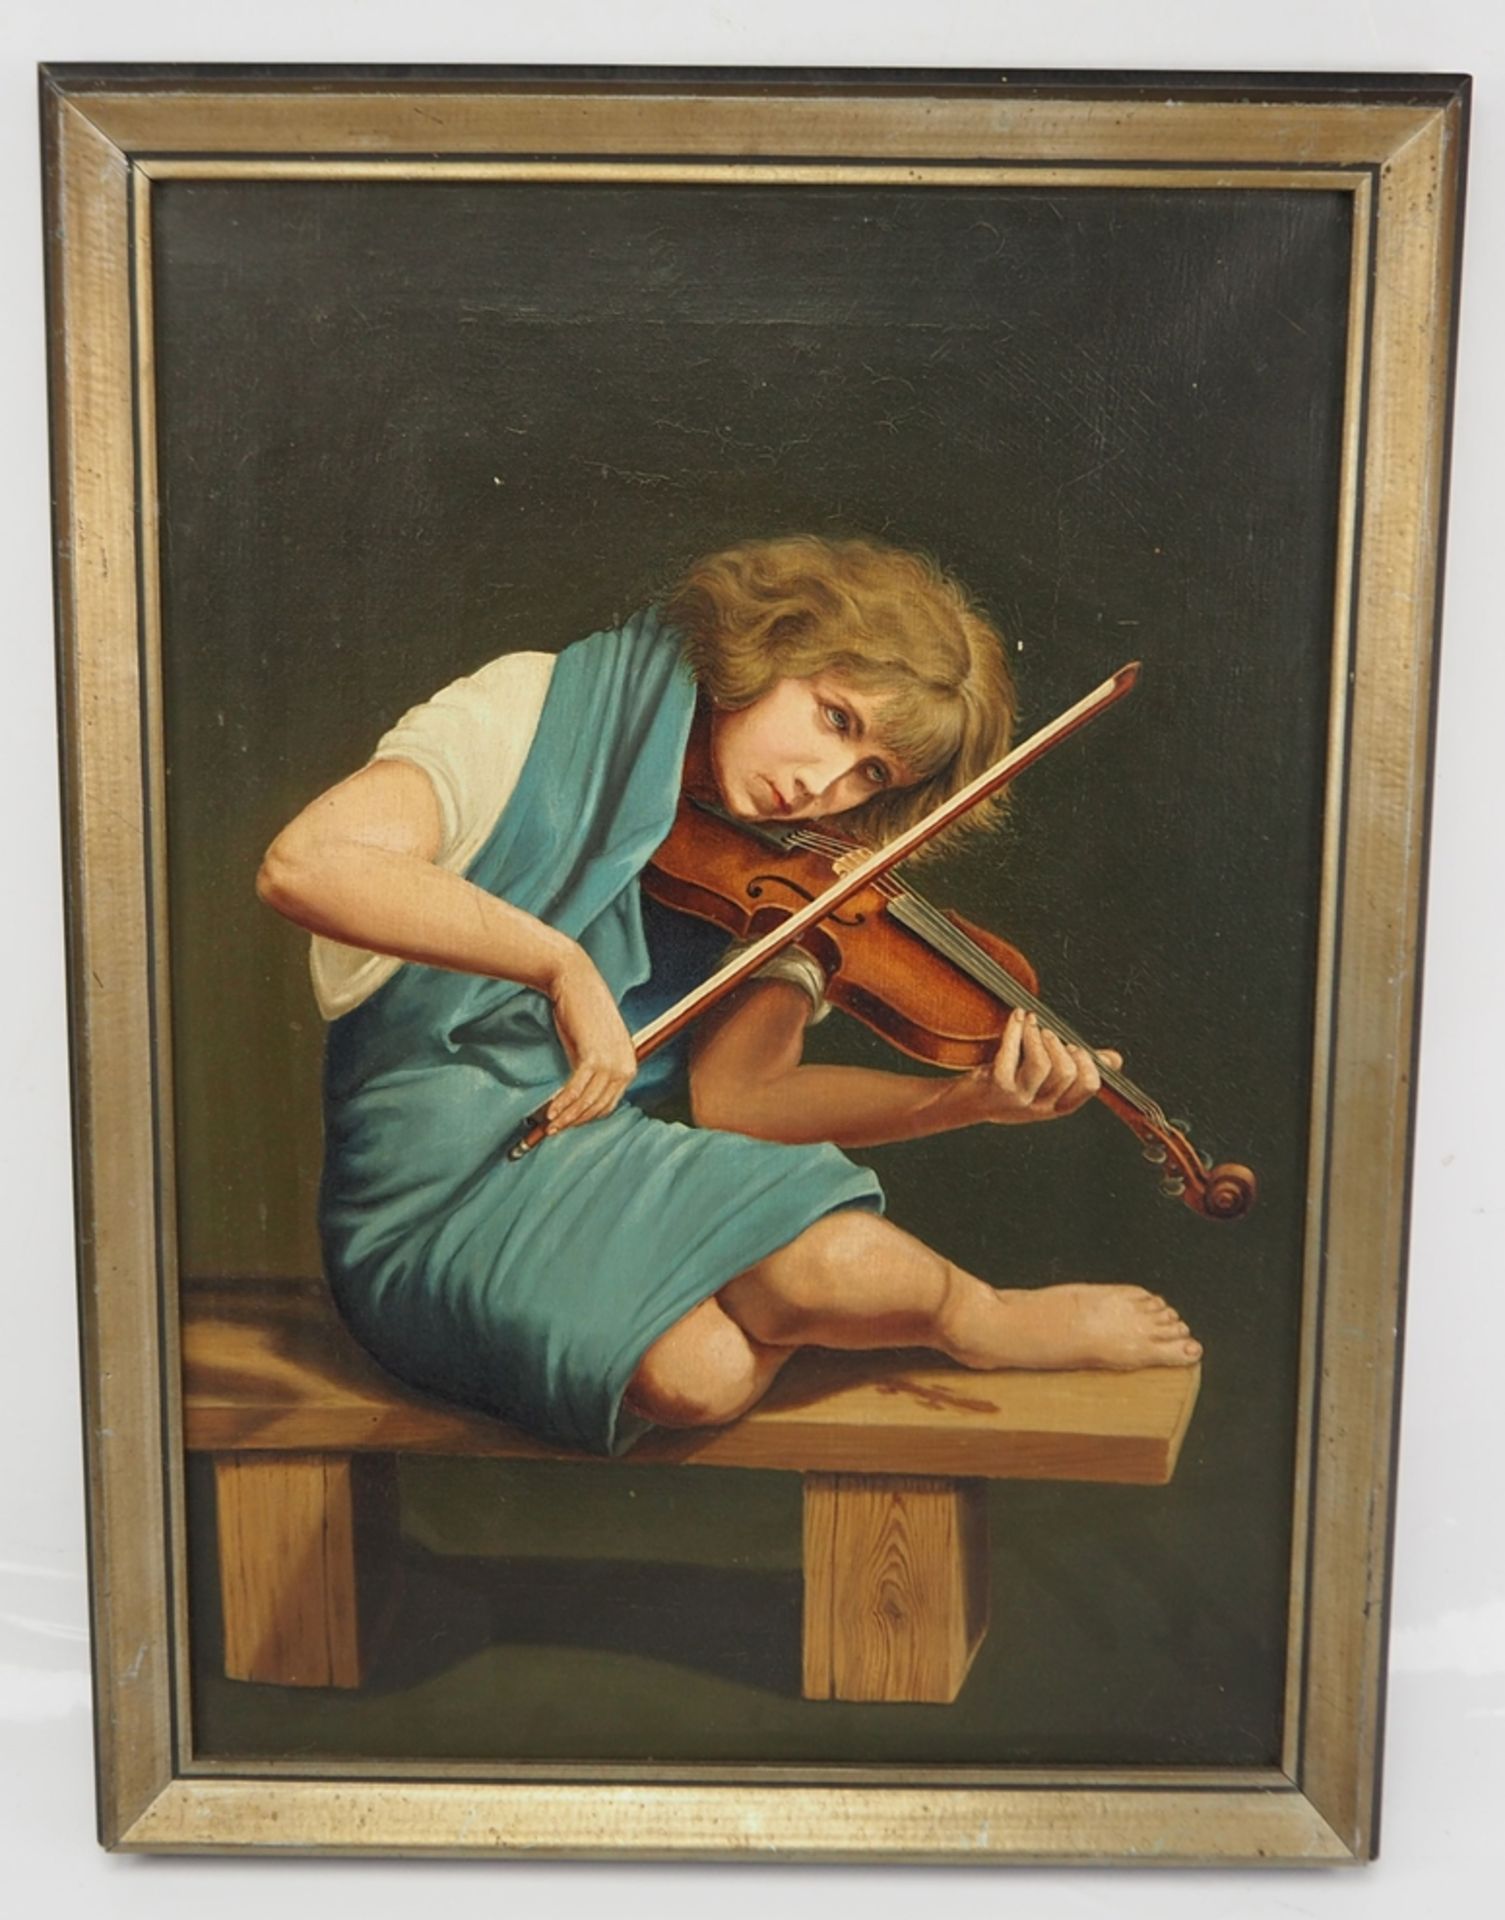 Geigenspielerin. - Image 2 of 2